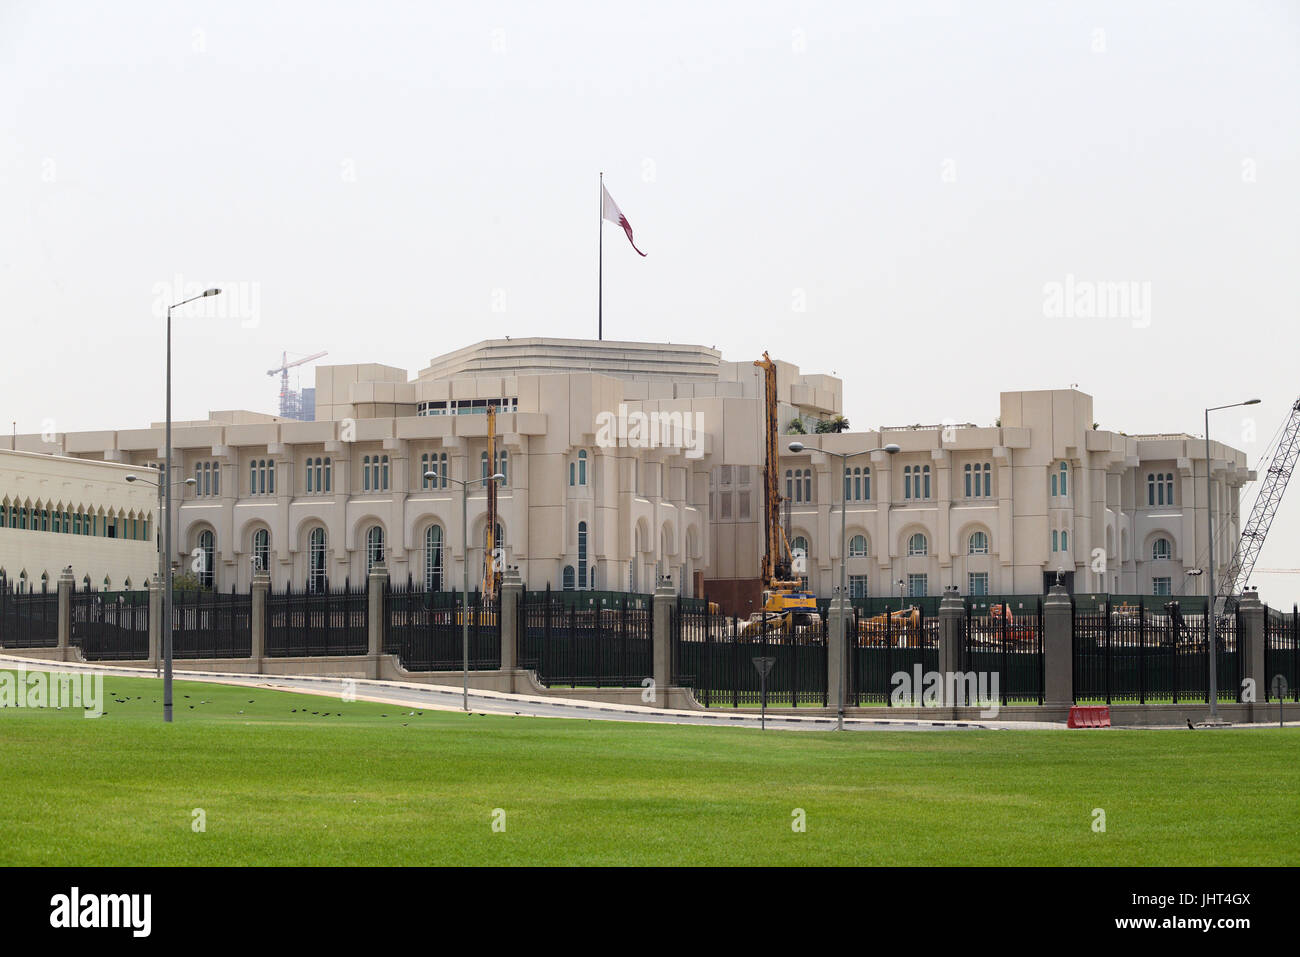 DOHA, QATAR - 15 juillet 2017 : le palais de l'Émir Diwan dans le centre de Doha. Cheikh Tamim bin Hamad al-Thani, Émir du Qatar, a rencontré Jean-Yves Le Drian, le ministre des affaires étrangères de la France, dans la capitale du Qatar aujourd'hui pour discuter de la crise du Golfe. Banque D'Images